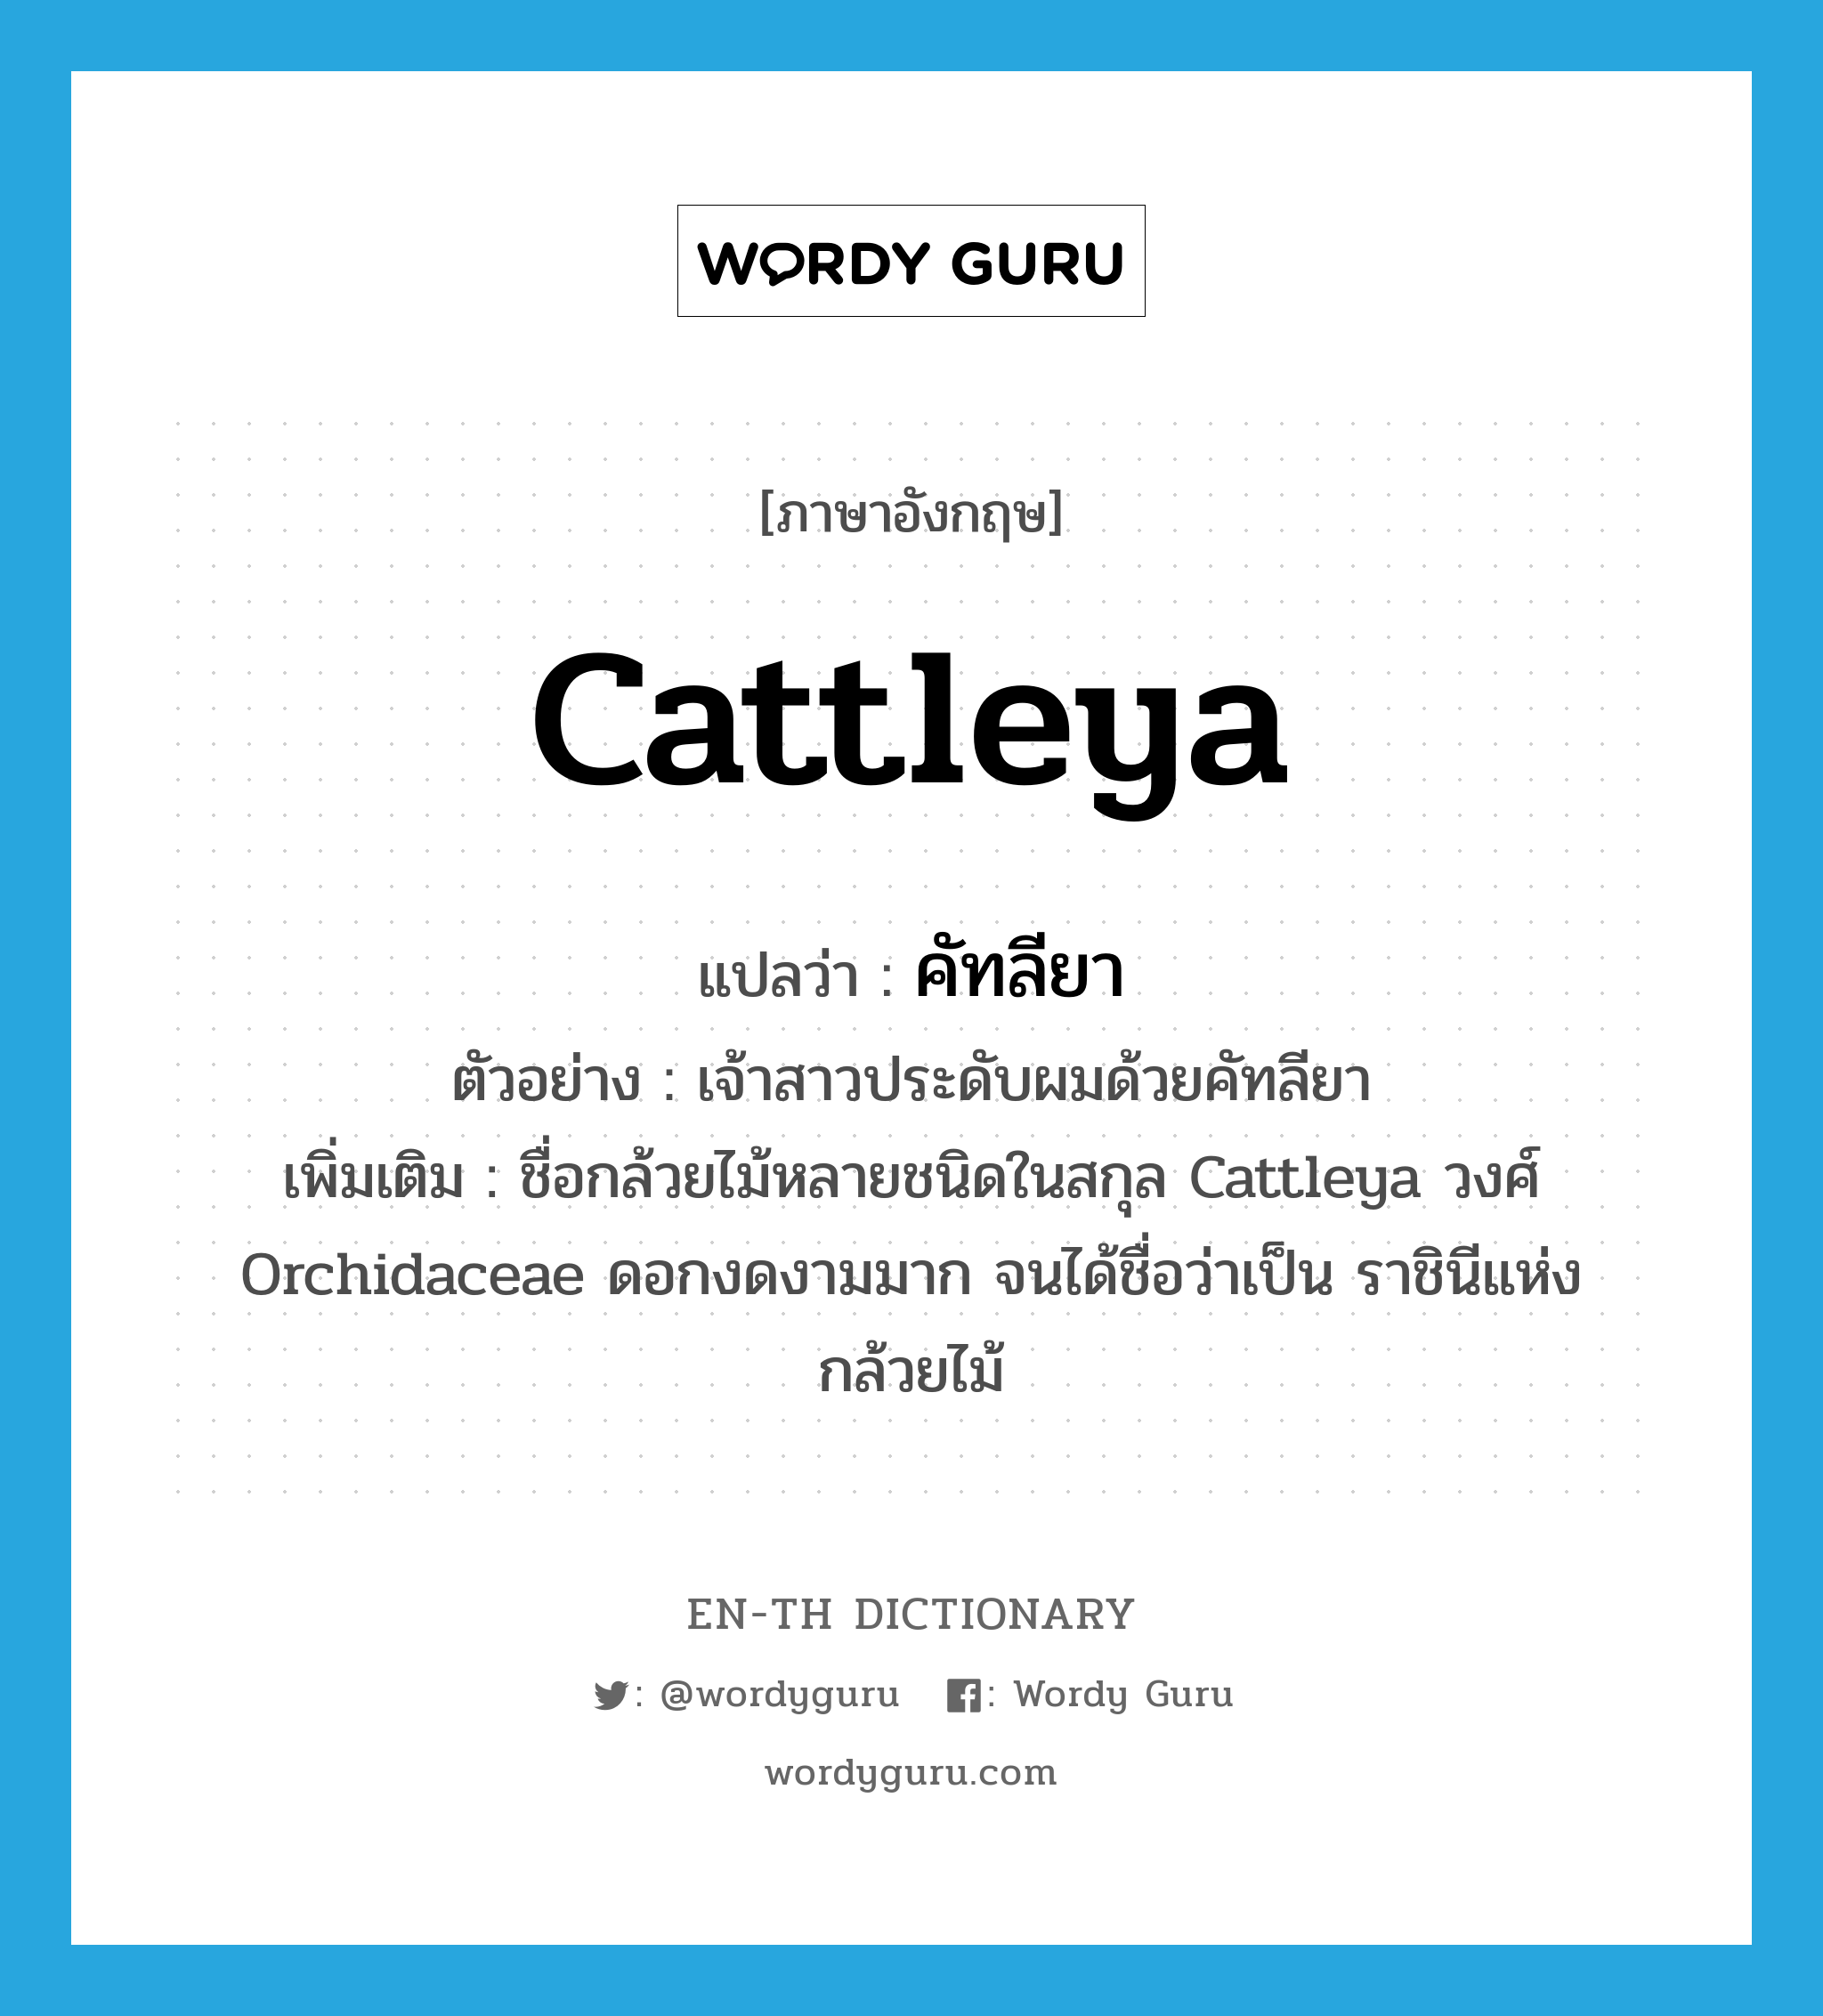 cattleya แปลว่า?, คำศัพท์ภาษาอังกฤษ Cattleya แปลว่า คัทลียา ประเภท N ตัวอย่าง เจ้าสาวประดับผมด้วยคัทลียา เพิ่มเติม ชื่อกล้วยไม้หลายชนิดในสกุล Cattleya วงศ์ Orchidaceae ดอกงดงามมาก จนได้ชื่อว่าเป็น ราชินีแห่งกล้วยไม้ หมวด N